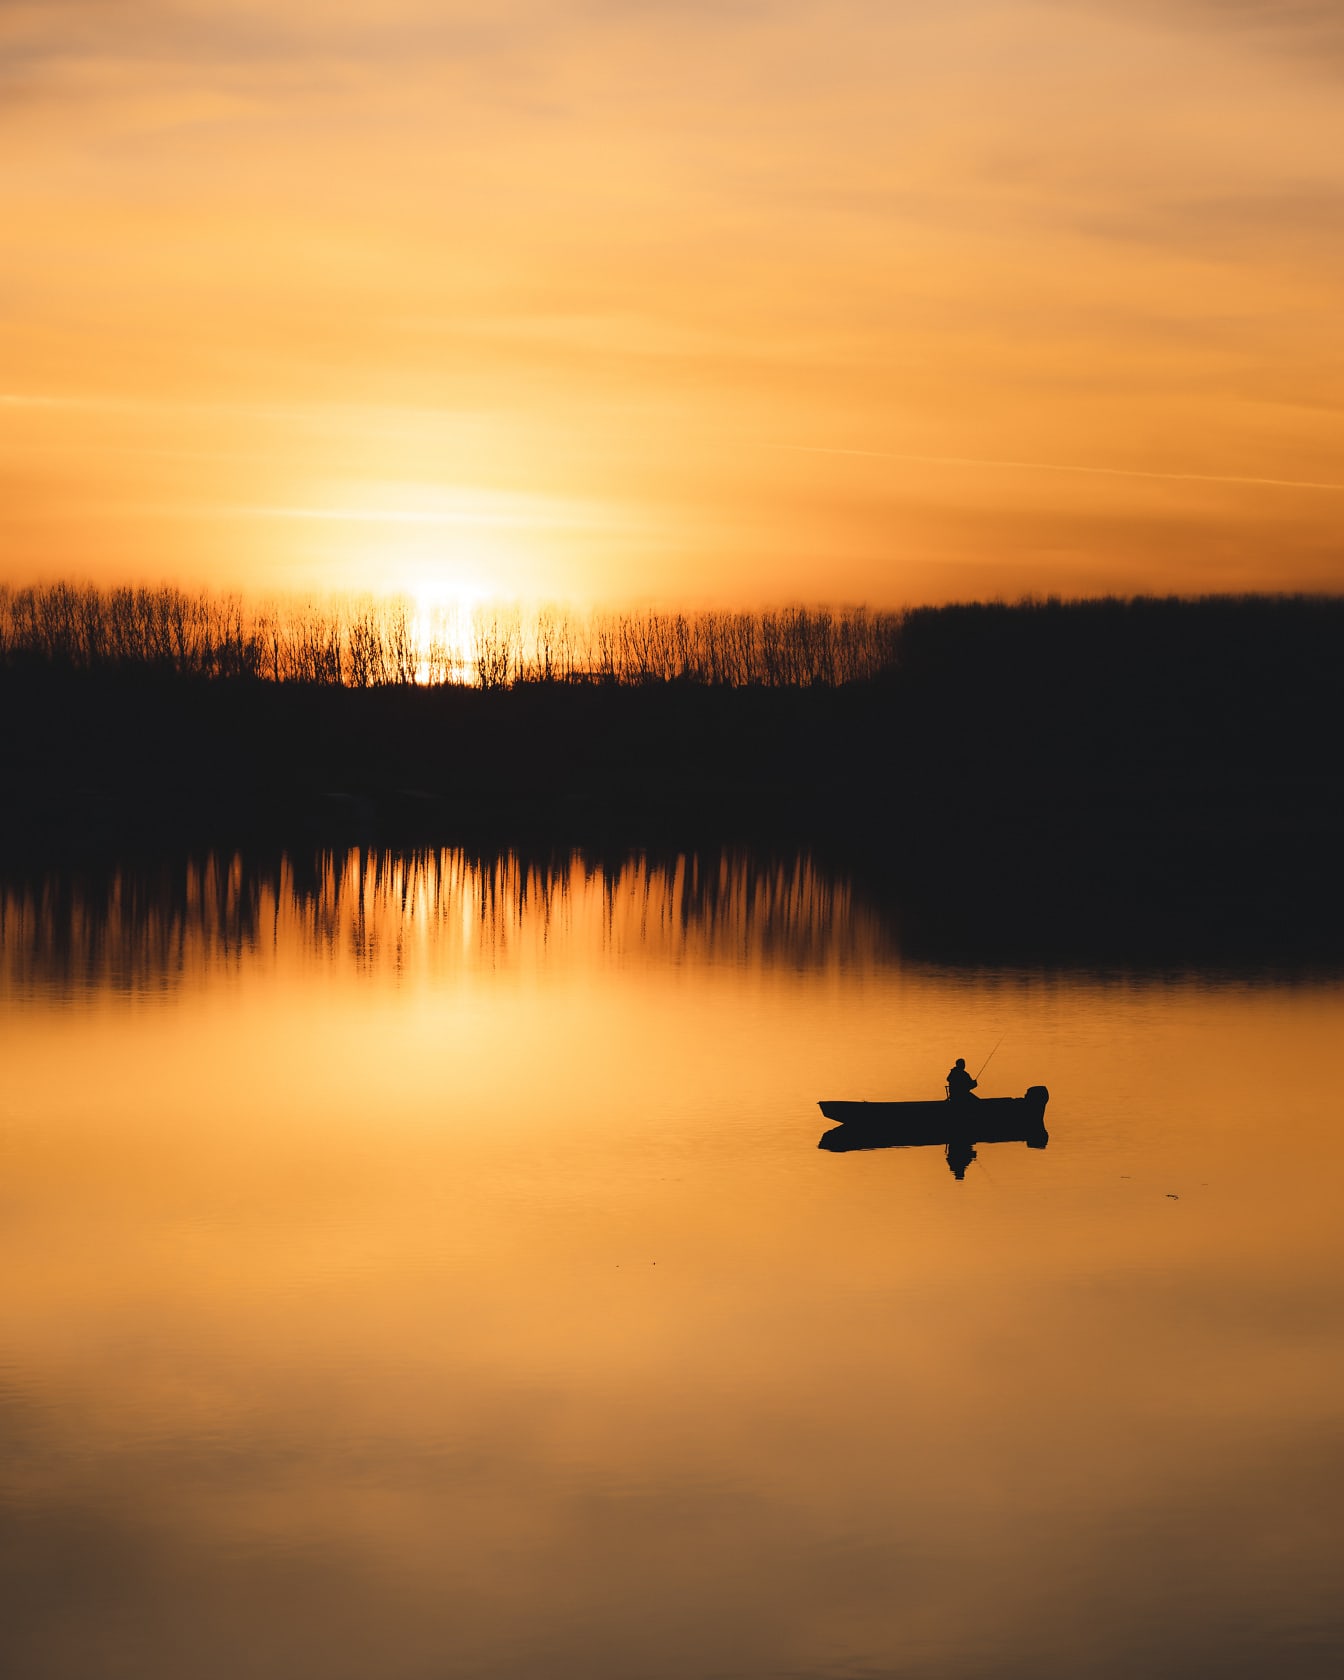 Pomarańczowo-żółty zachód słońca na brzegu rzeki z sylwetką łodzi rybackiej